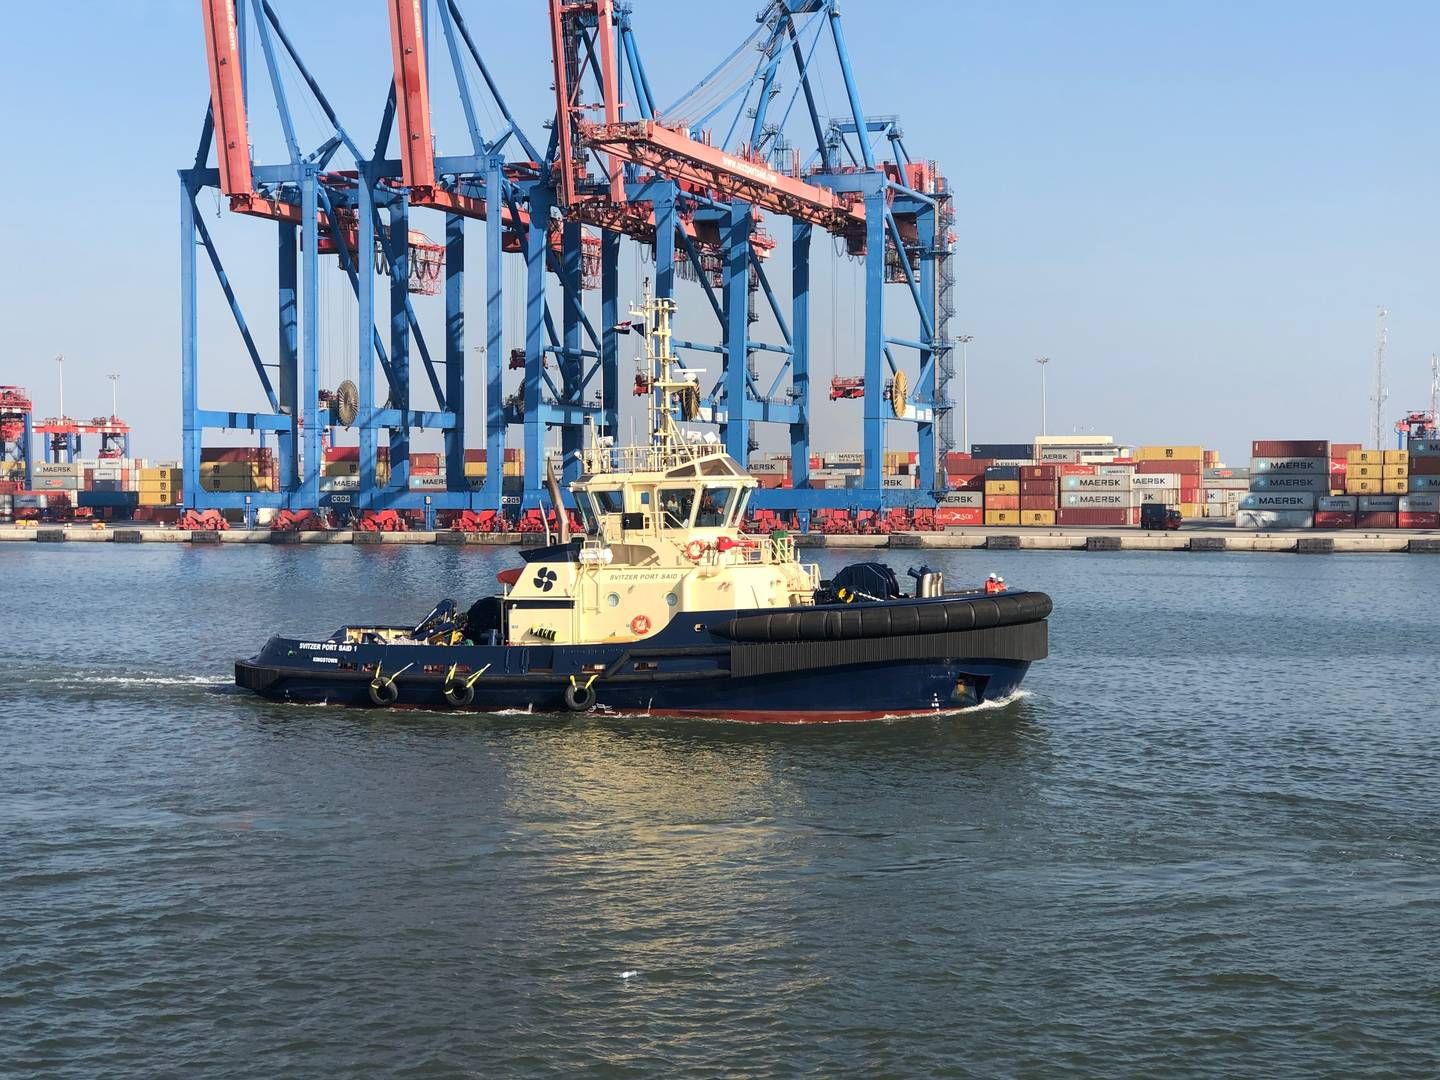 Slæbebådsrederiet Svitzer kan sammen med Maersk Supply Service, Maersk Container Industry og Maersk Training være på vej ud af Maersk-koncernen. | Foto: Pr/svitzer